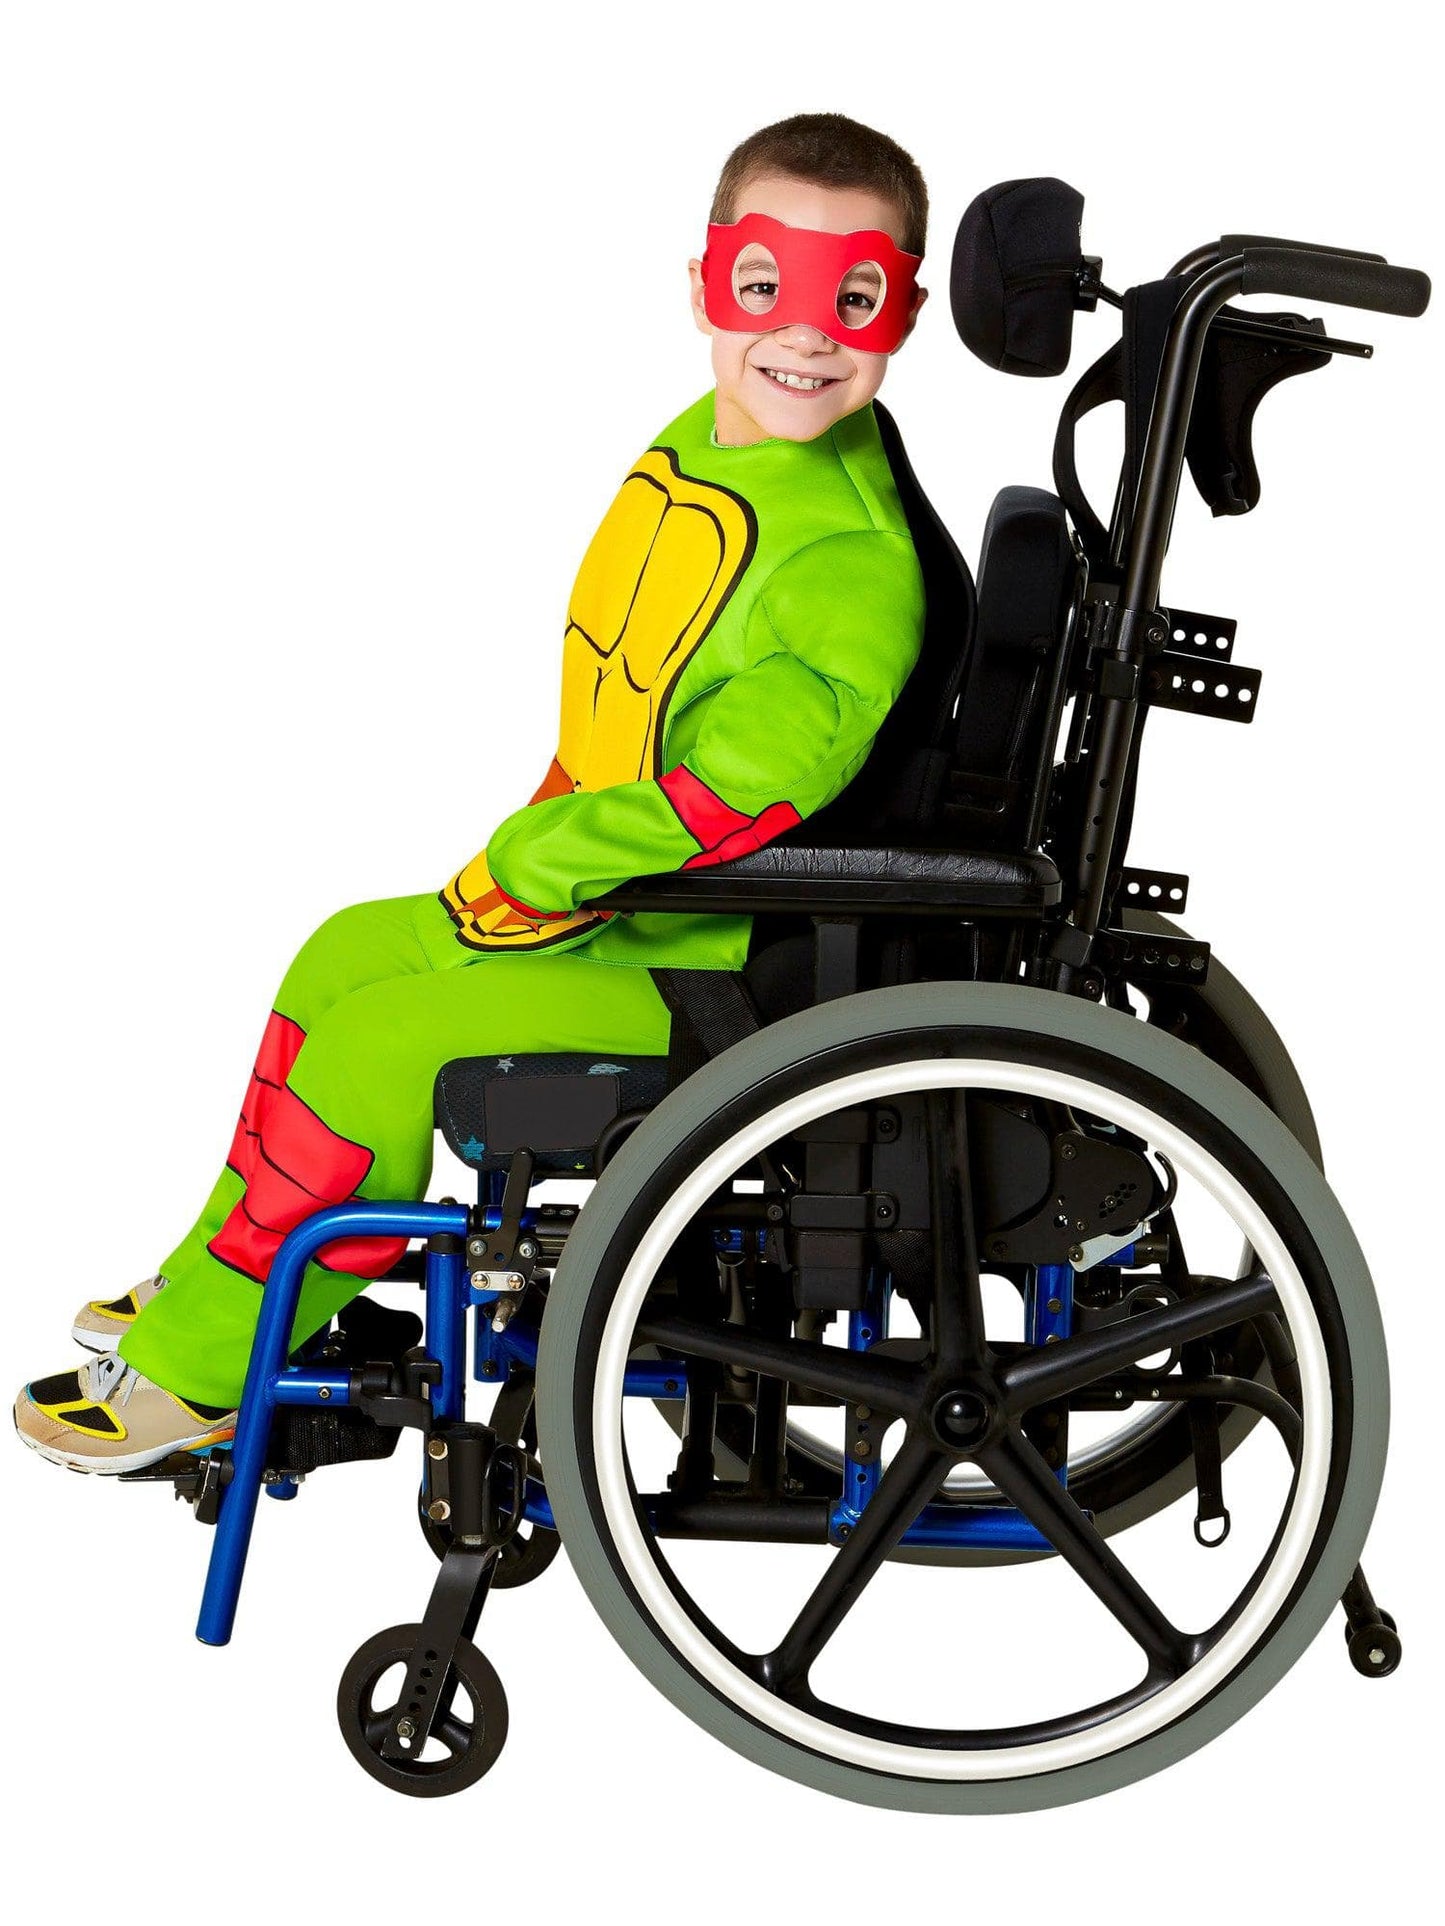 Teenage Mutant Ninja Turtles Raphael Adaptive Costume